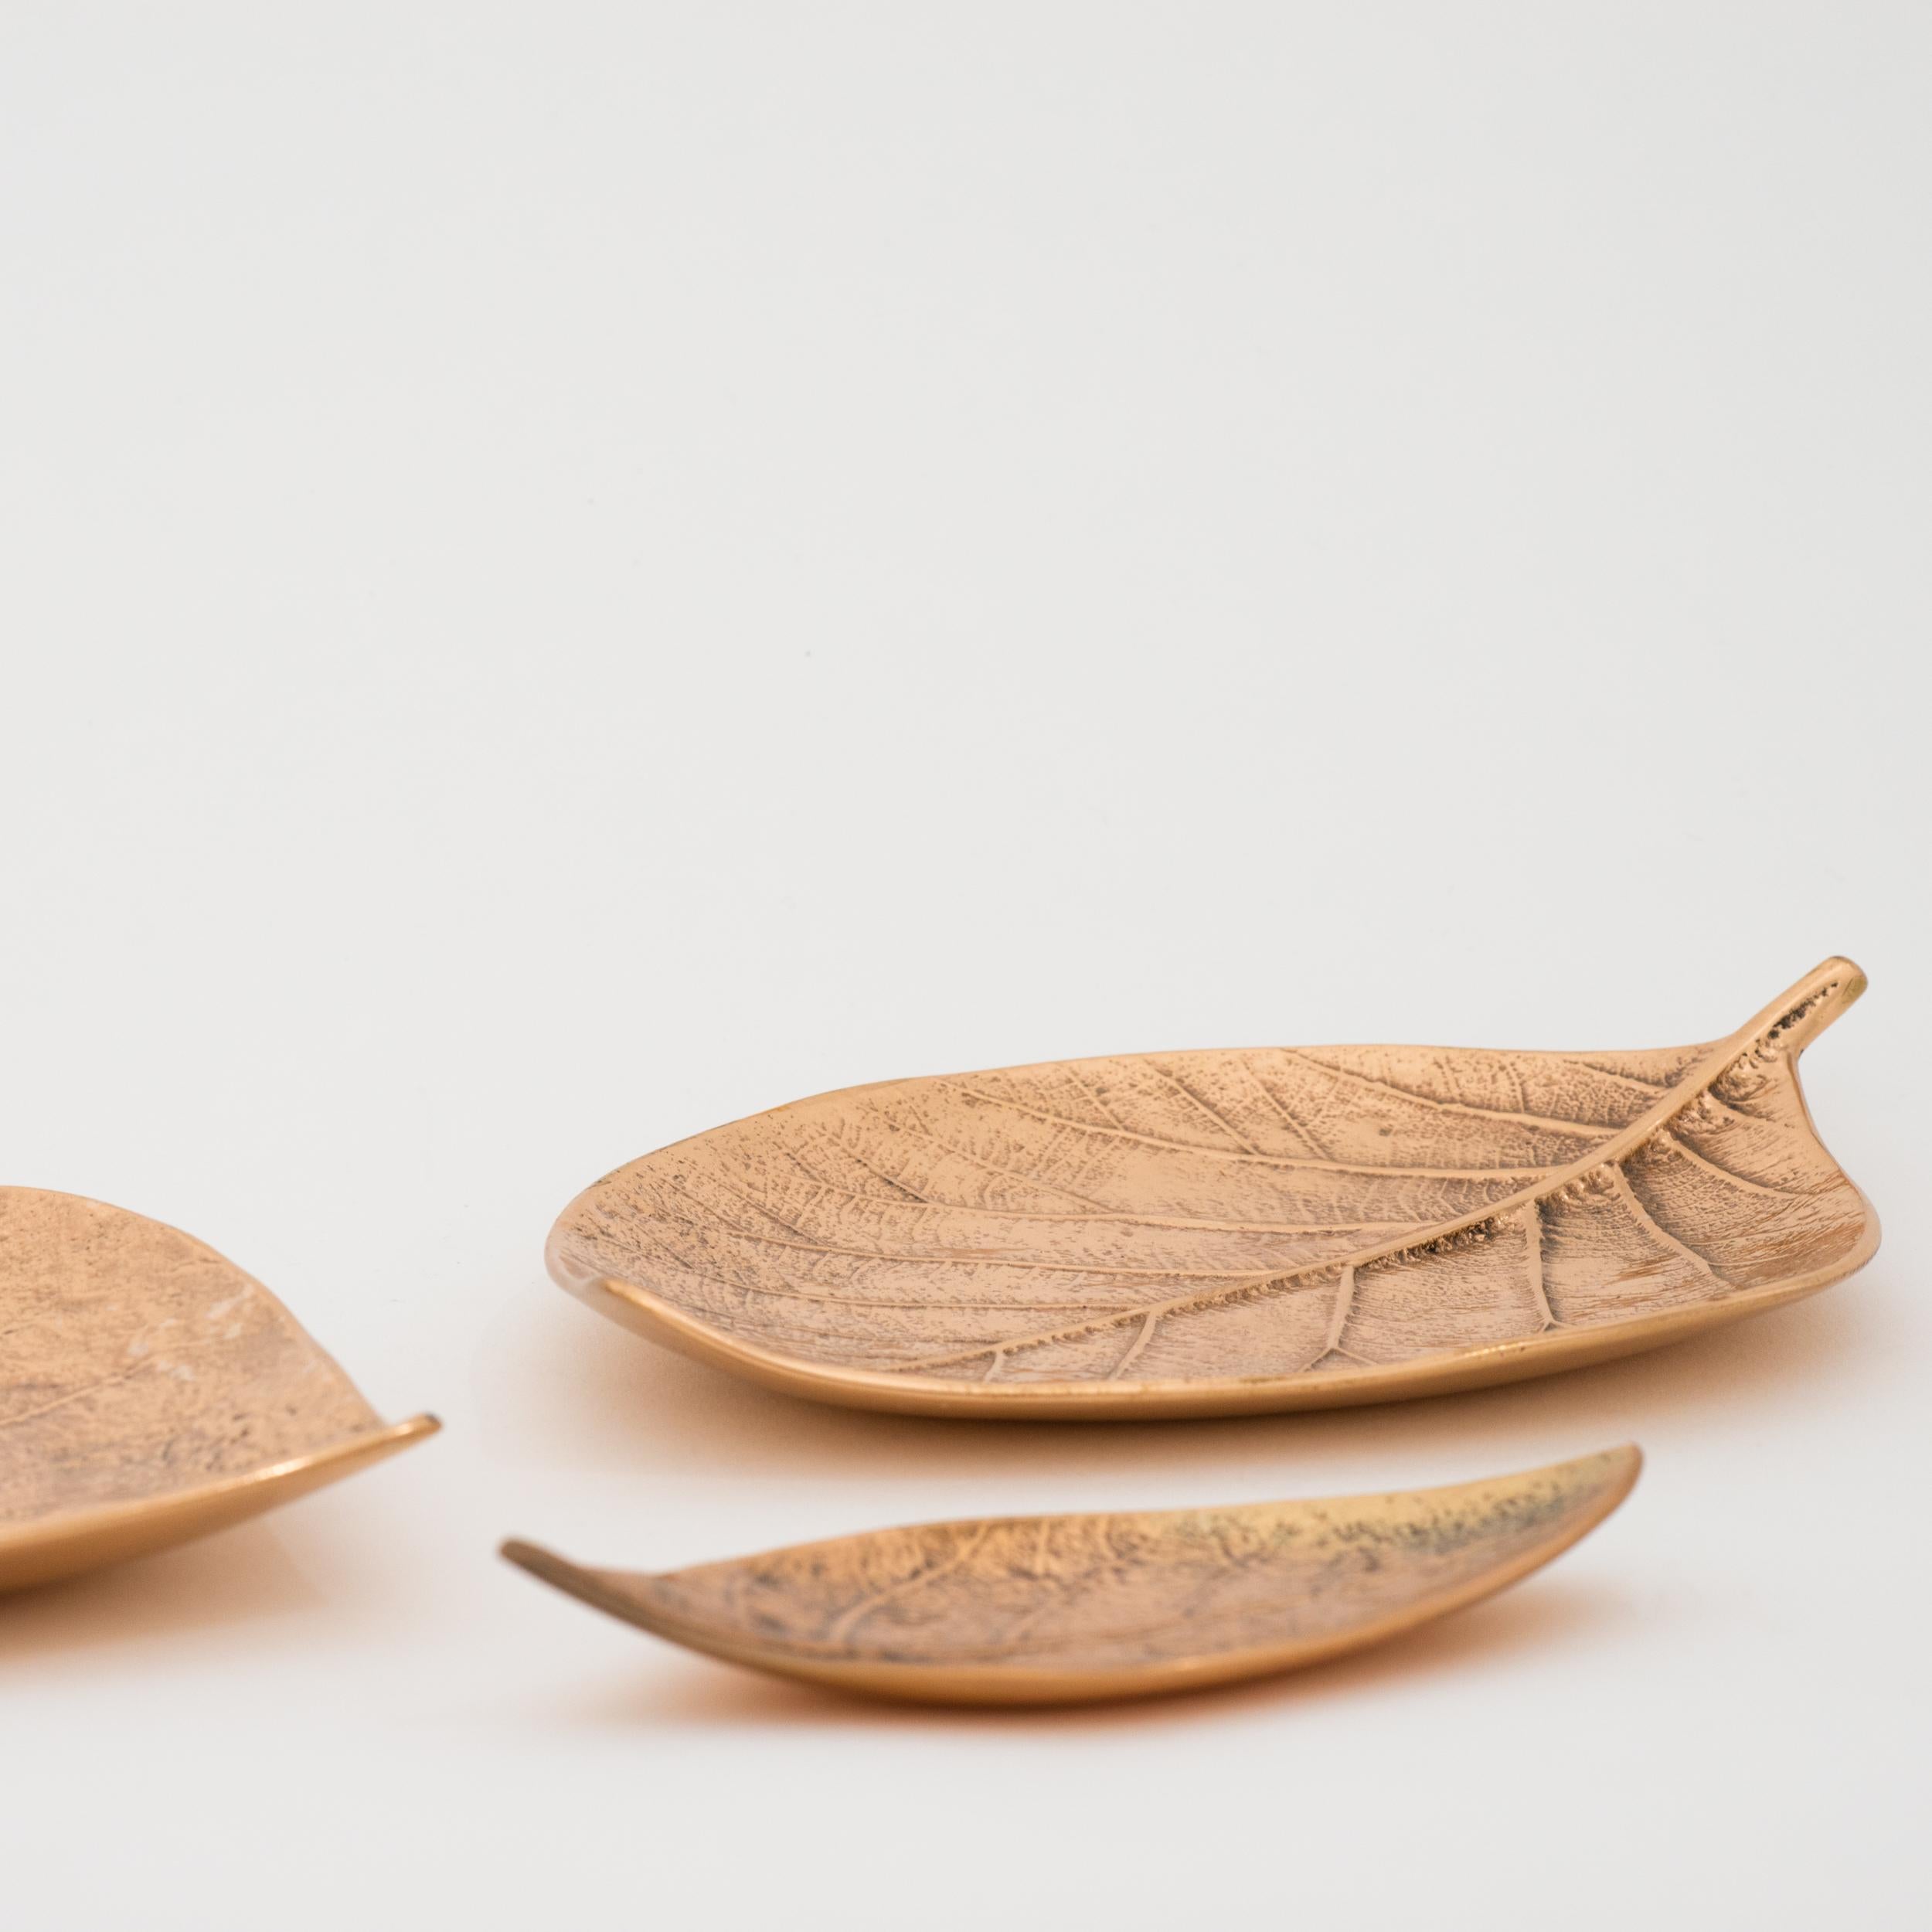 Decorative Handmade Cast Bronze Leaf Vide Poche Candleholder, Medium For Sale 1